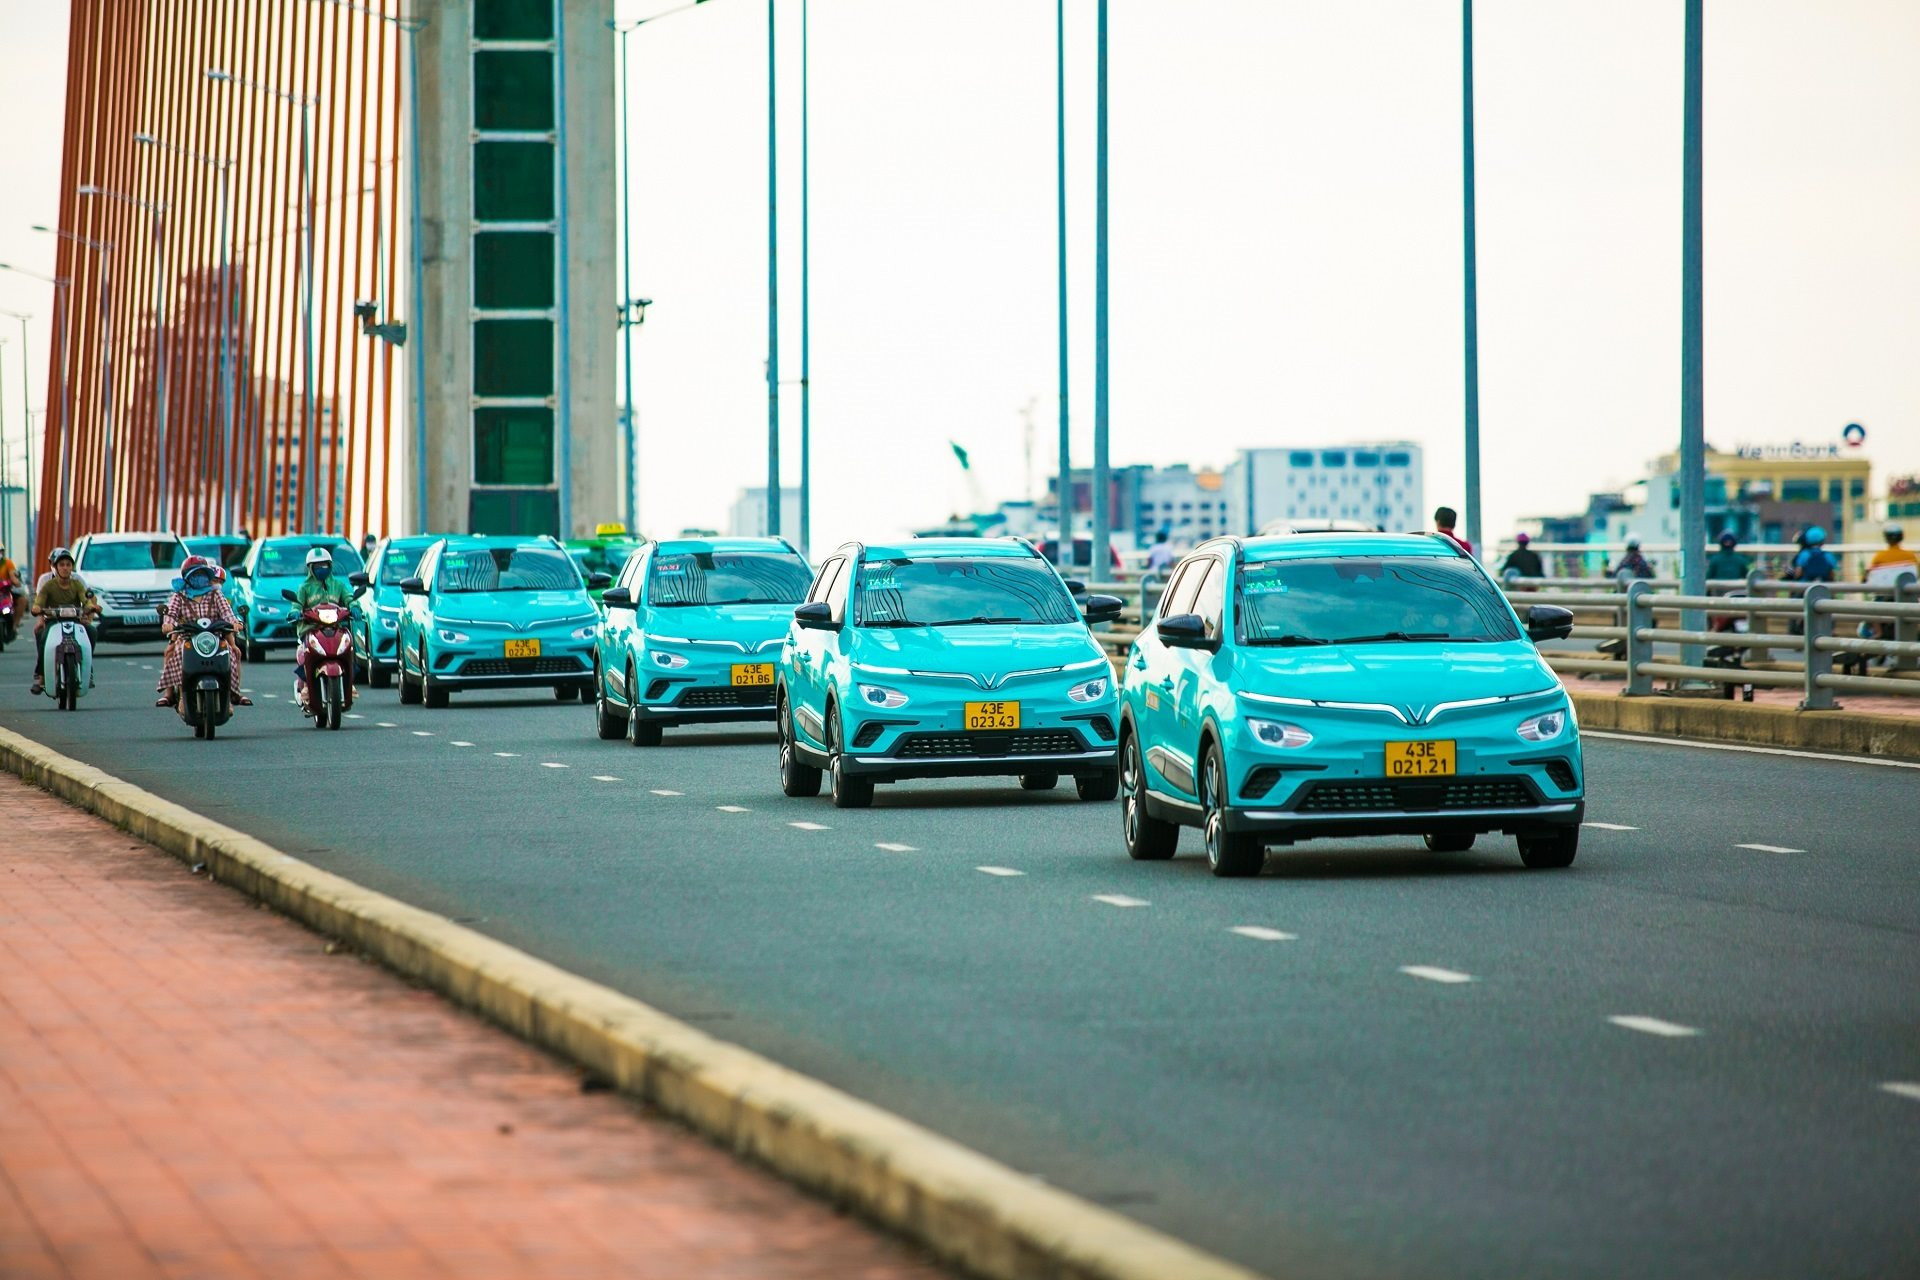 Taxi Xanh SM chính thức lăn bánh tại Đà Nẵng, có thêm tour trọn gói đến các điểm tham quan - Ảnh 1.